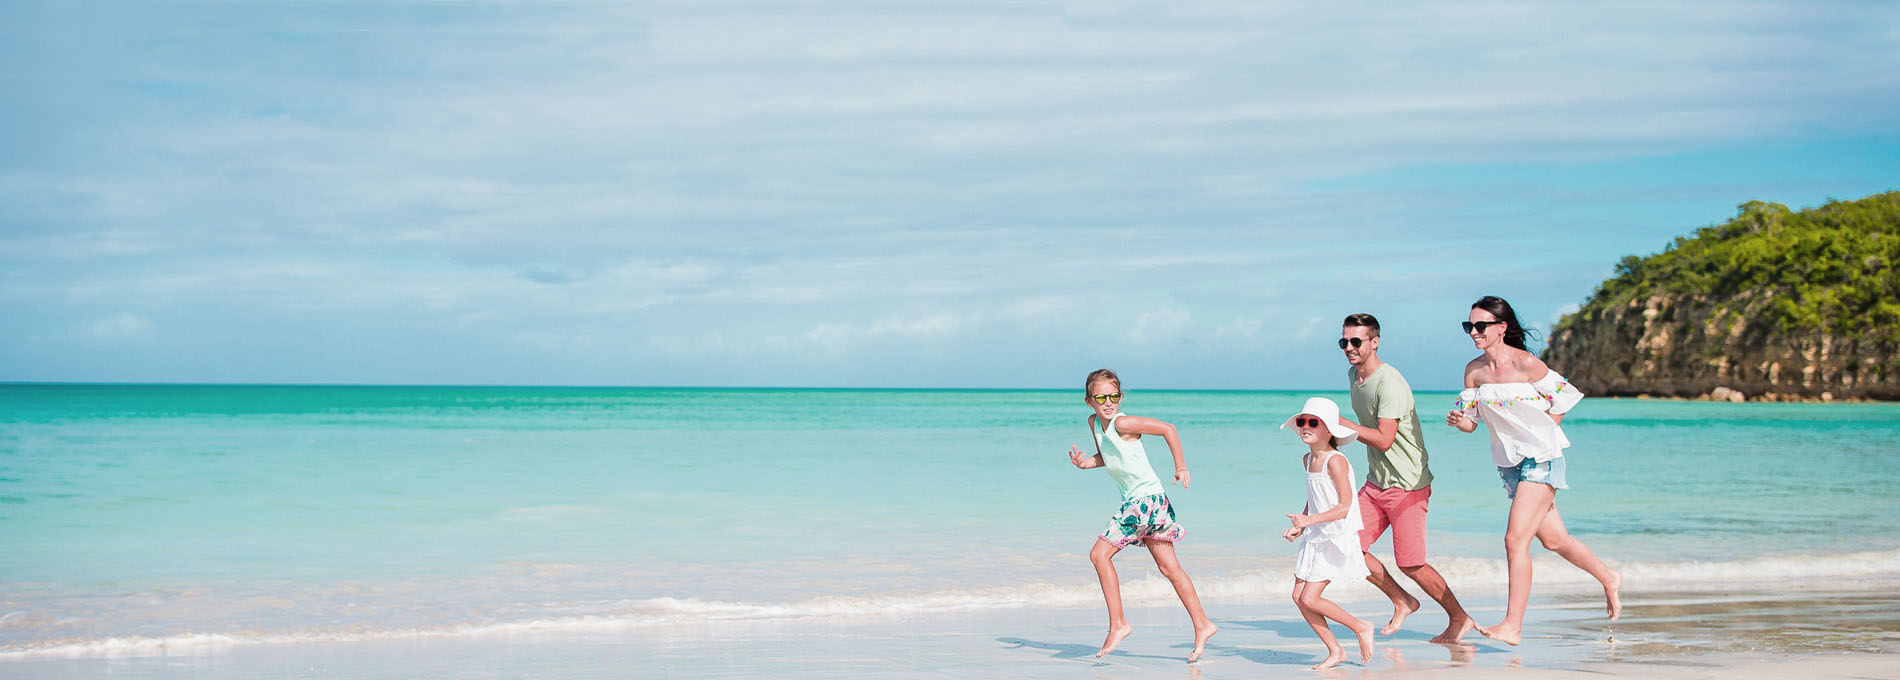 Őrangyal utasbiztosítás - Fiatal család nyaral, boldogan szaladnak a homokos tengerparton a tengerparton